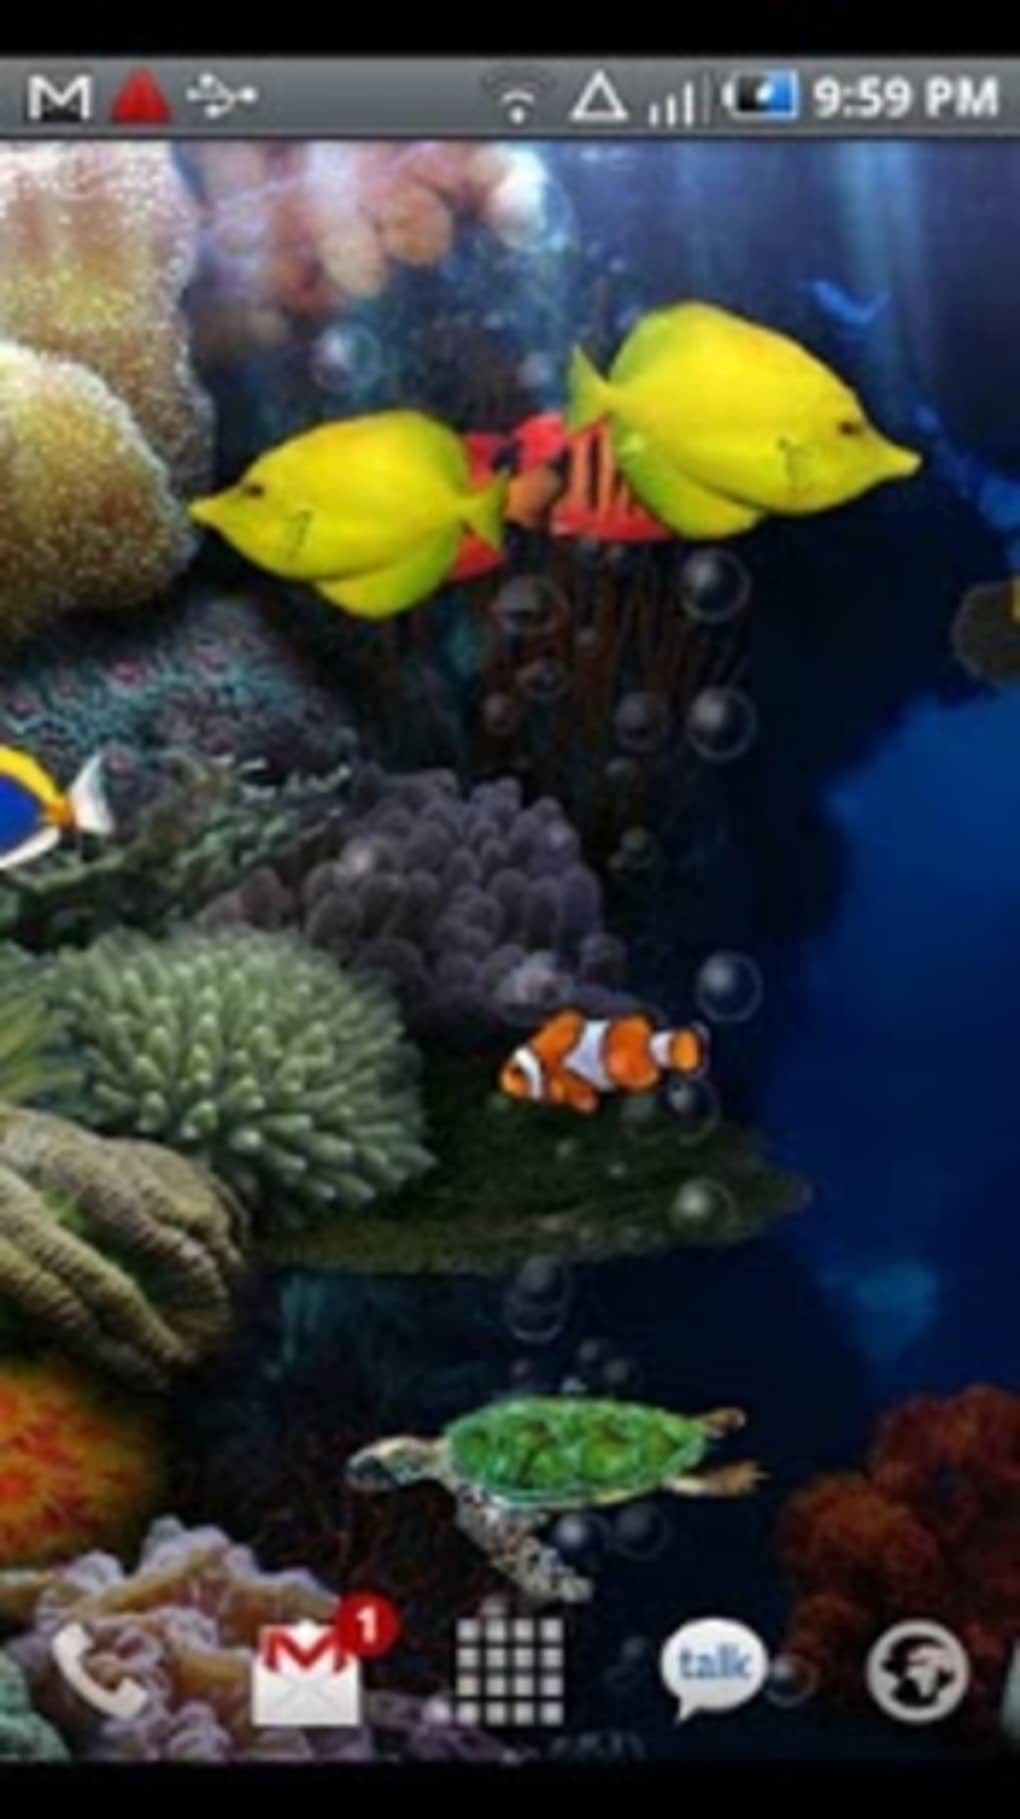 Aquarium Live Wallpaper - Android Live Wallpapers Download - HD Wallpaper 